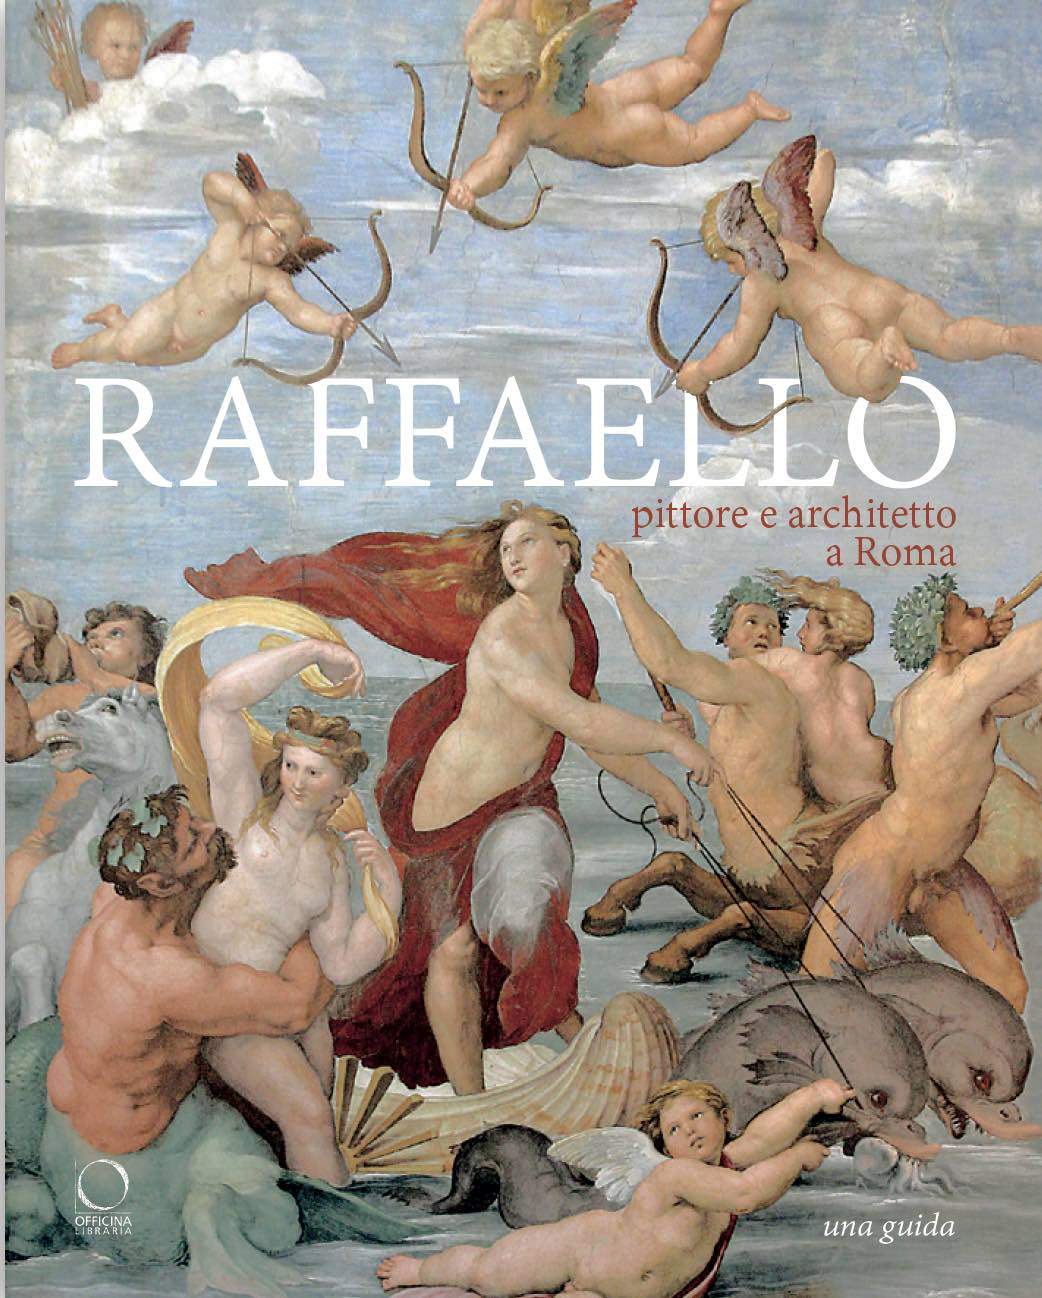 Un livre est publié avec des itinéraires pour découvrir la Rome du peintre et architecte Raphaël.